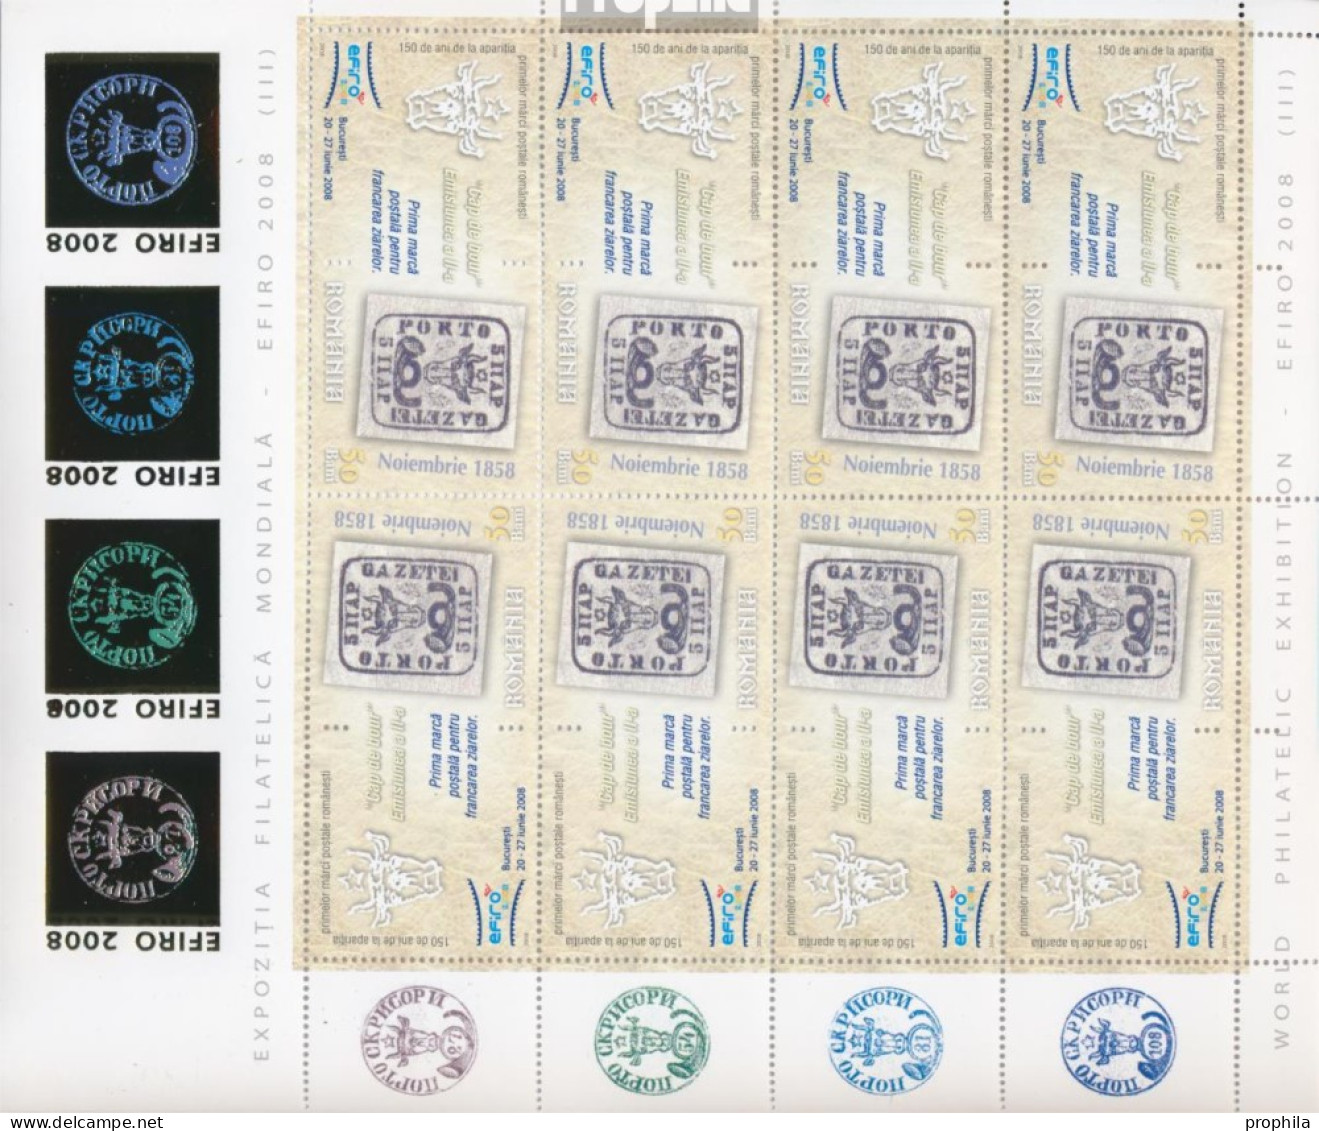 Rumänien 6299x Klb II-6304x Klb II Kleinbogen (kompl.Ausg.) Postfrisch 2008 BriefmarkenausstellungEFIRO 08 - Neufs